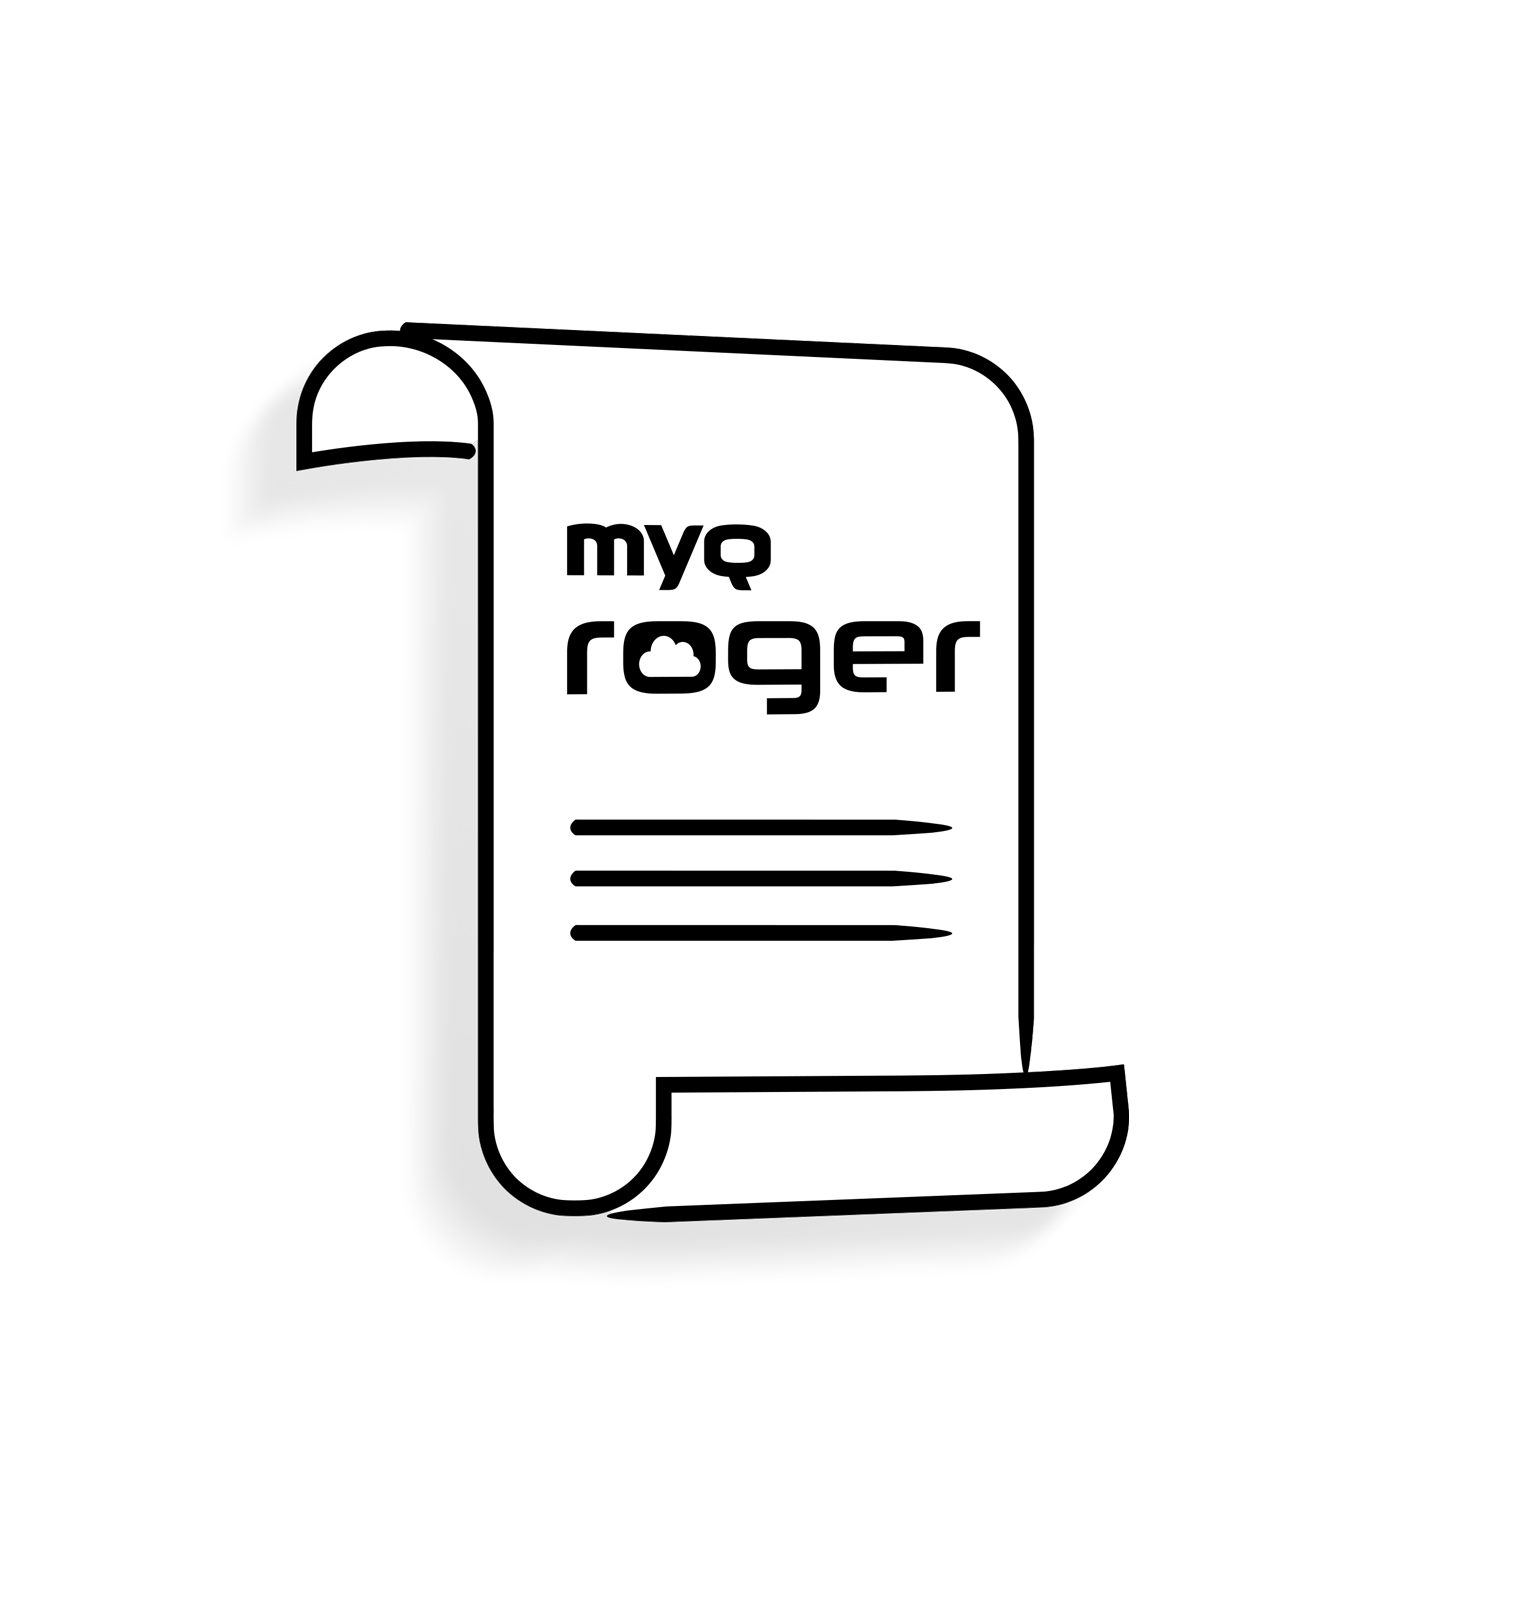 与 MyQ Roger 相关的文件 